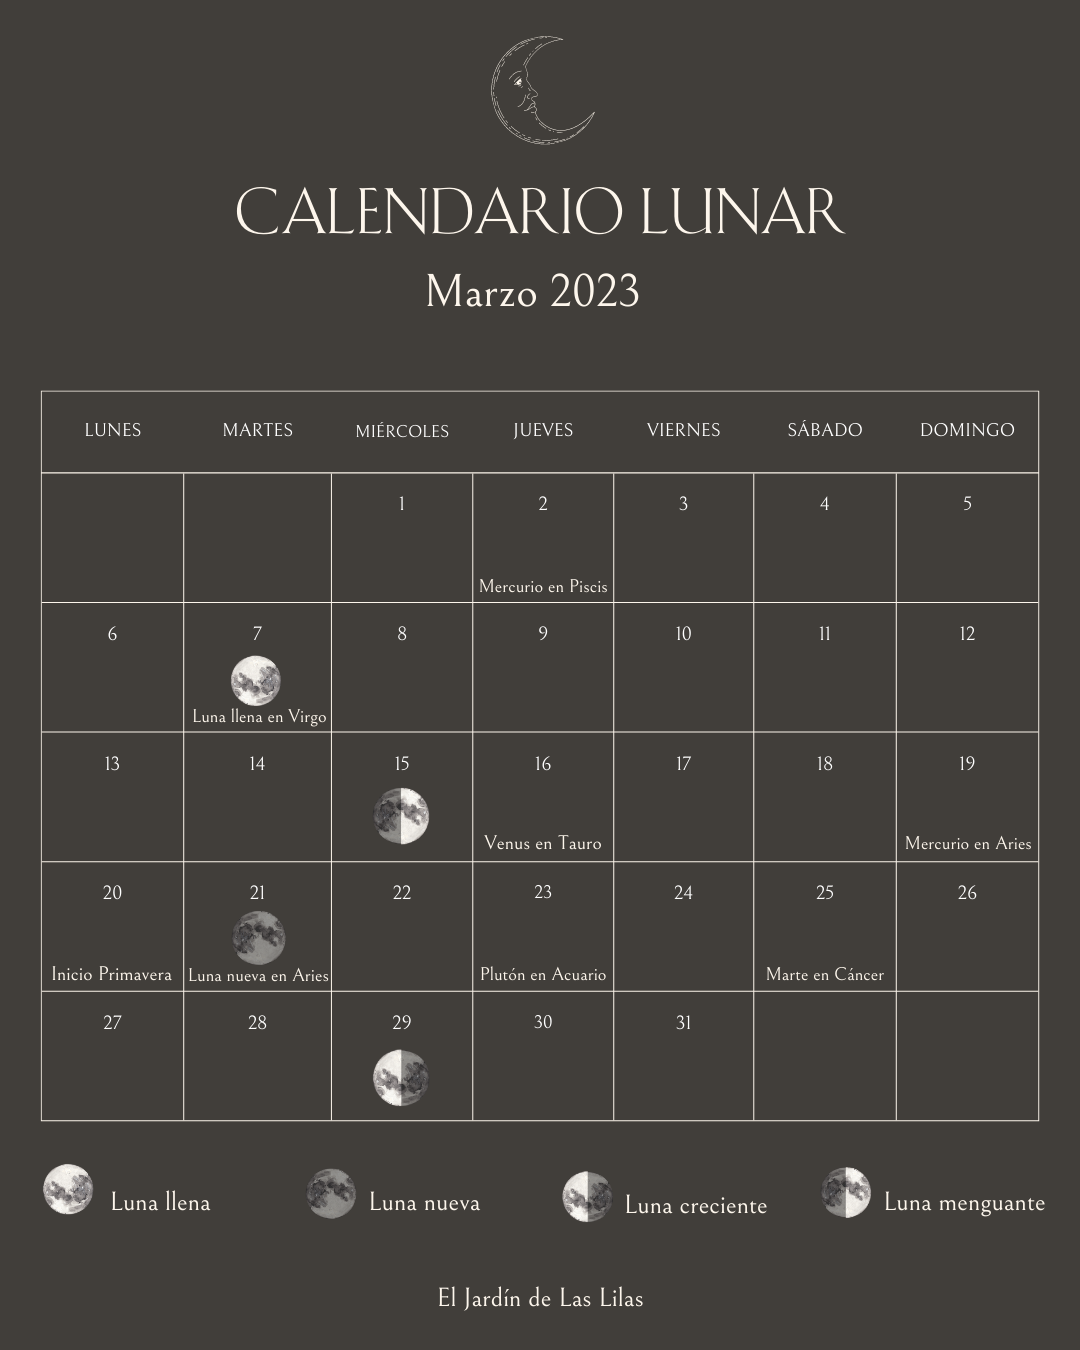 Calendario Lunar marzo 2023 — El Jardin de las Lilas